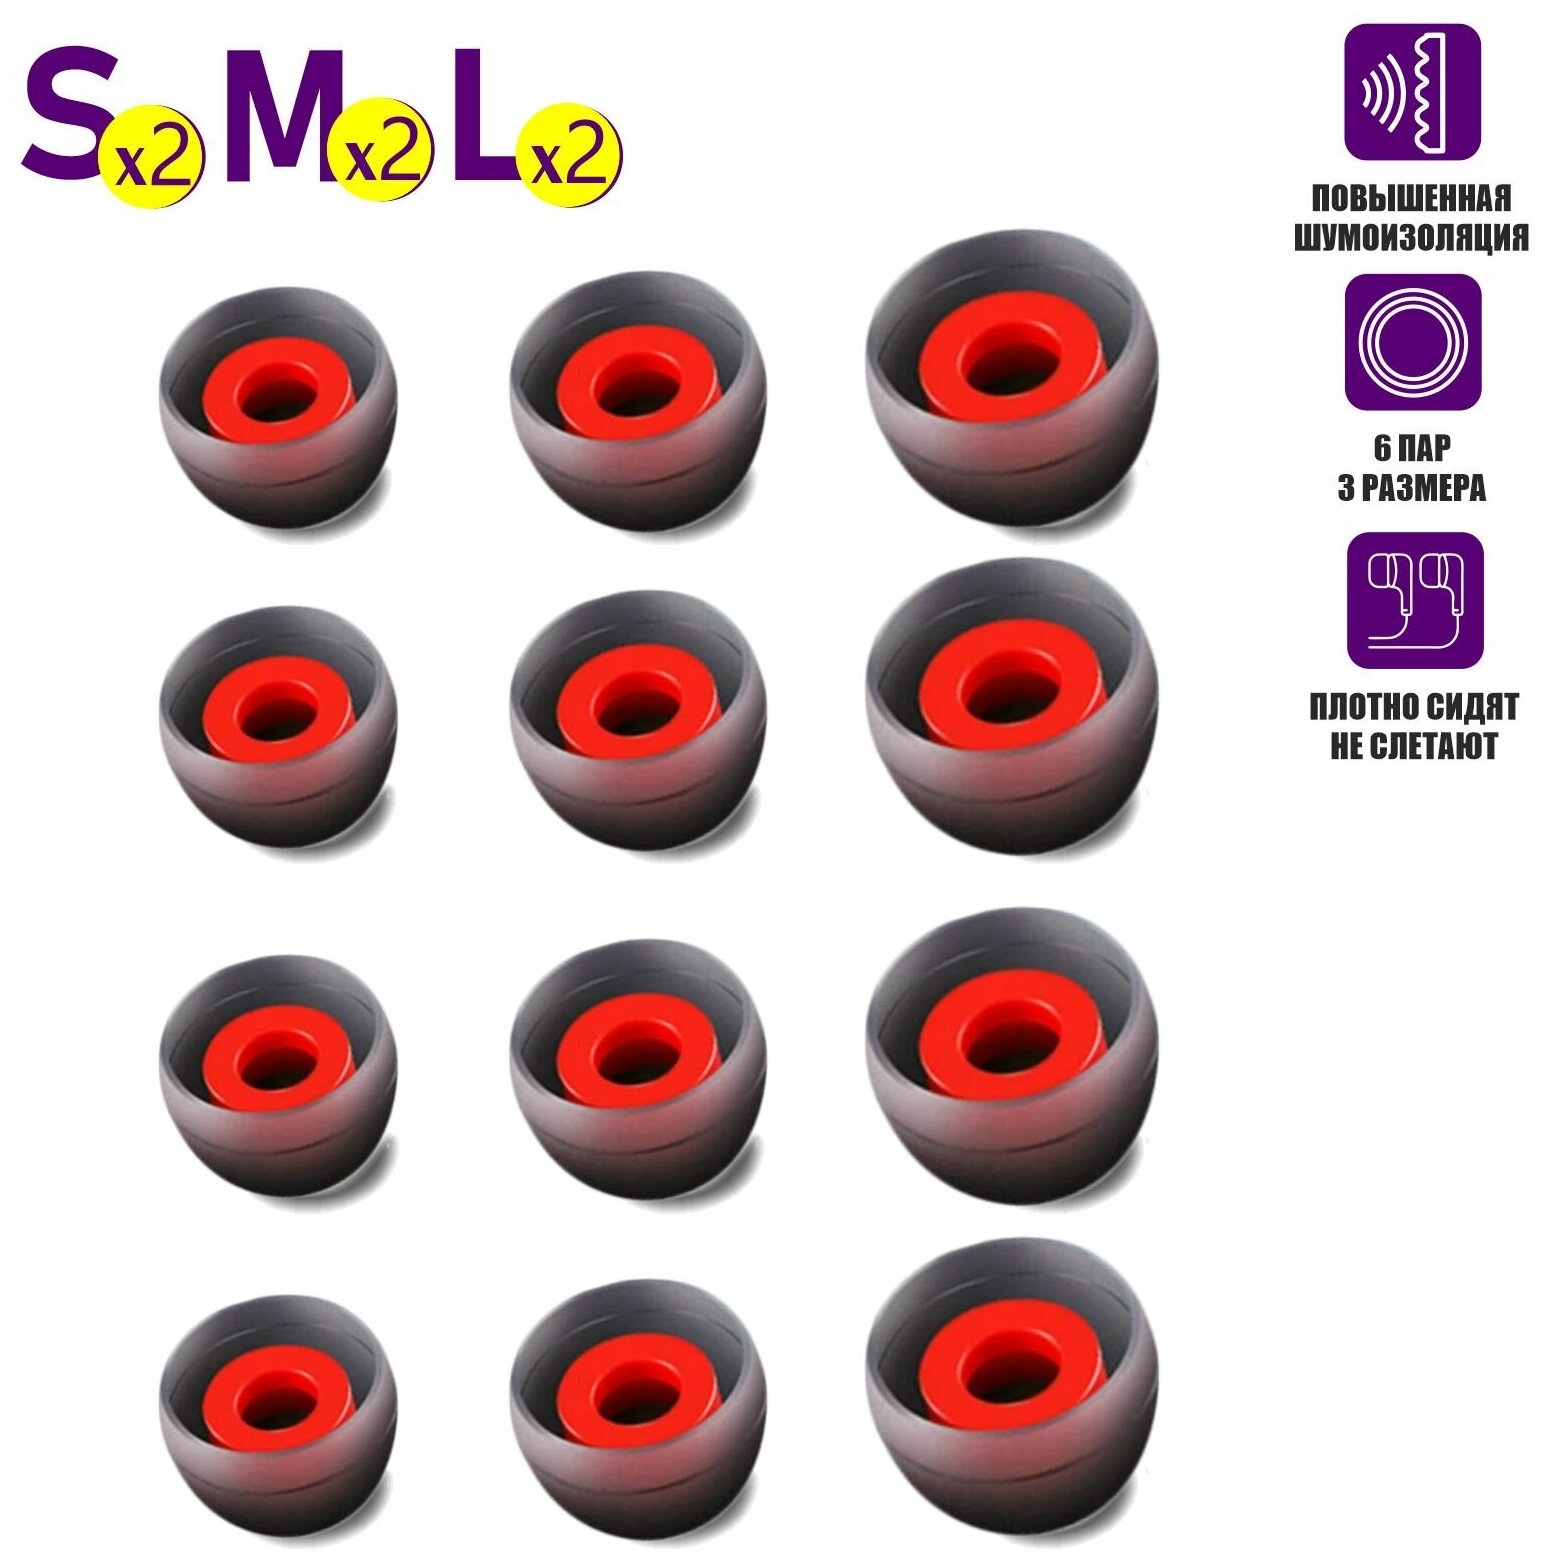 Амбушюры для наушников ALC07, размер S - 2 пары, M - 2 пары, L - 2 пары, серо-красный